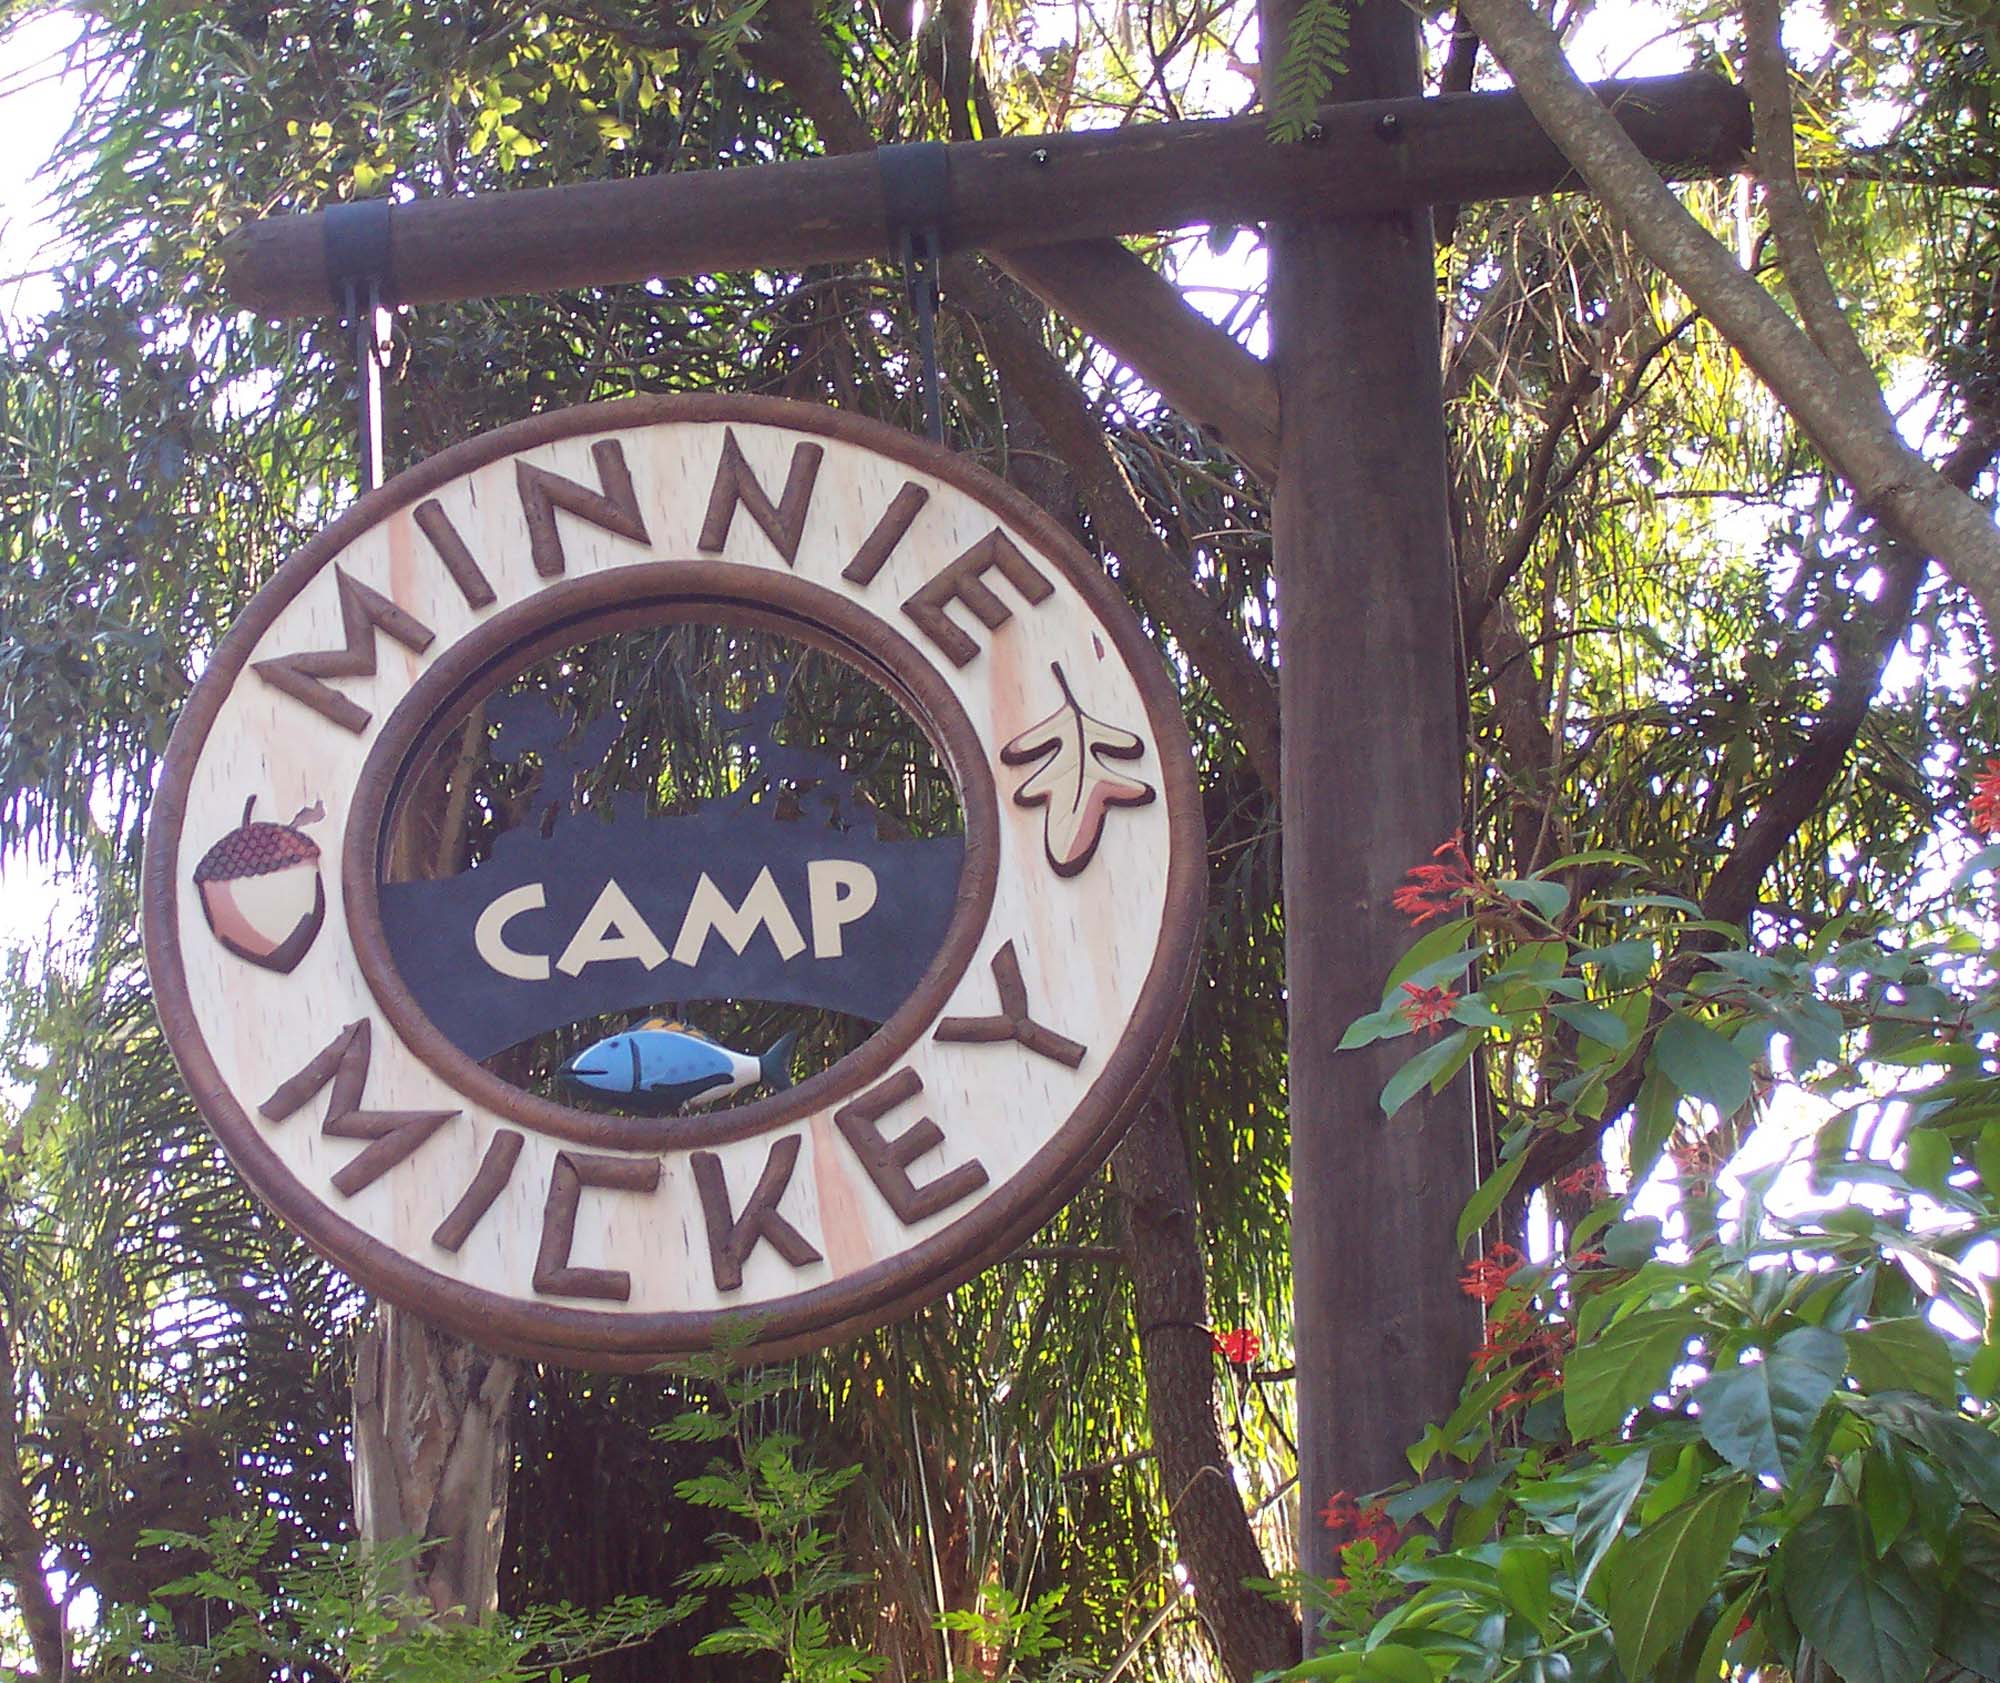 Disney's Animal Kingdom - Camp Minnie Mickey sign